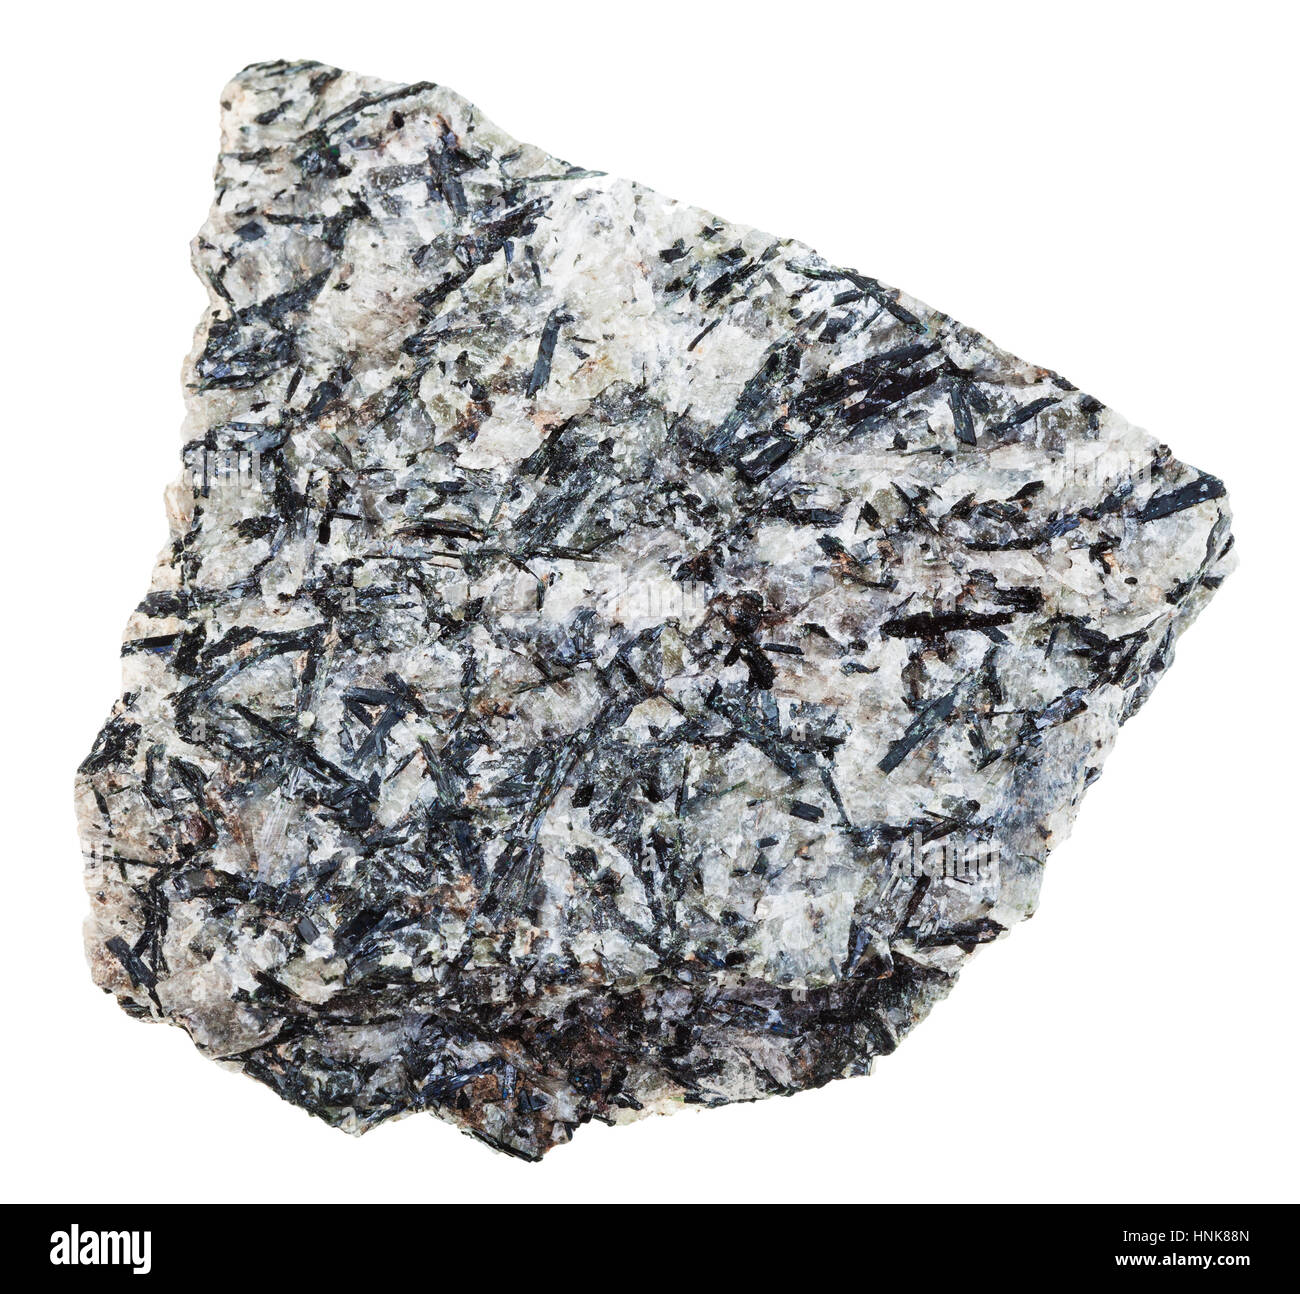 Makro-Aufnahmen der geologischen Sammlung Mineral - Probe des Lujaurite (Lujavrite, Nepheline Syenit) Rock isoliert auf weißem Hintergrund Stockfoto